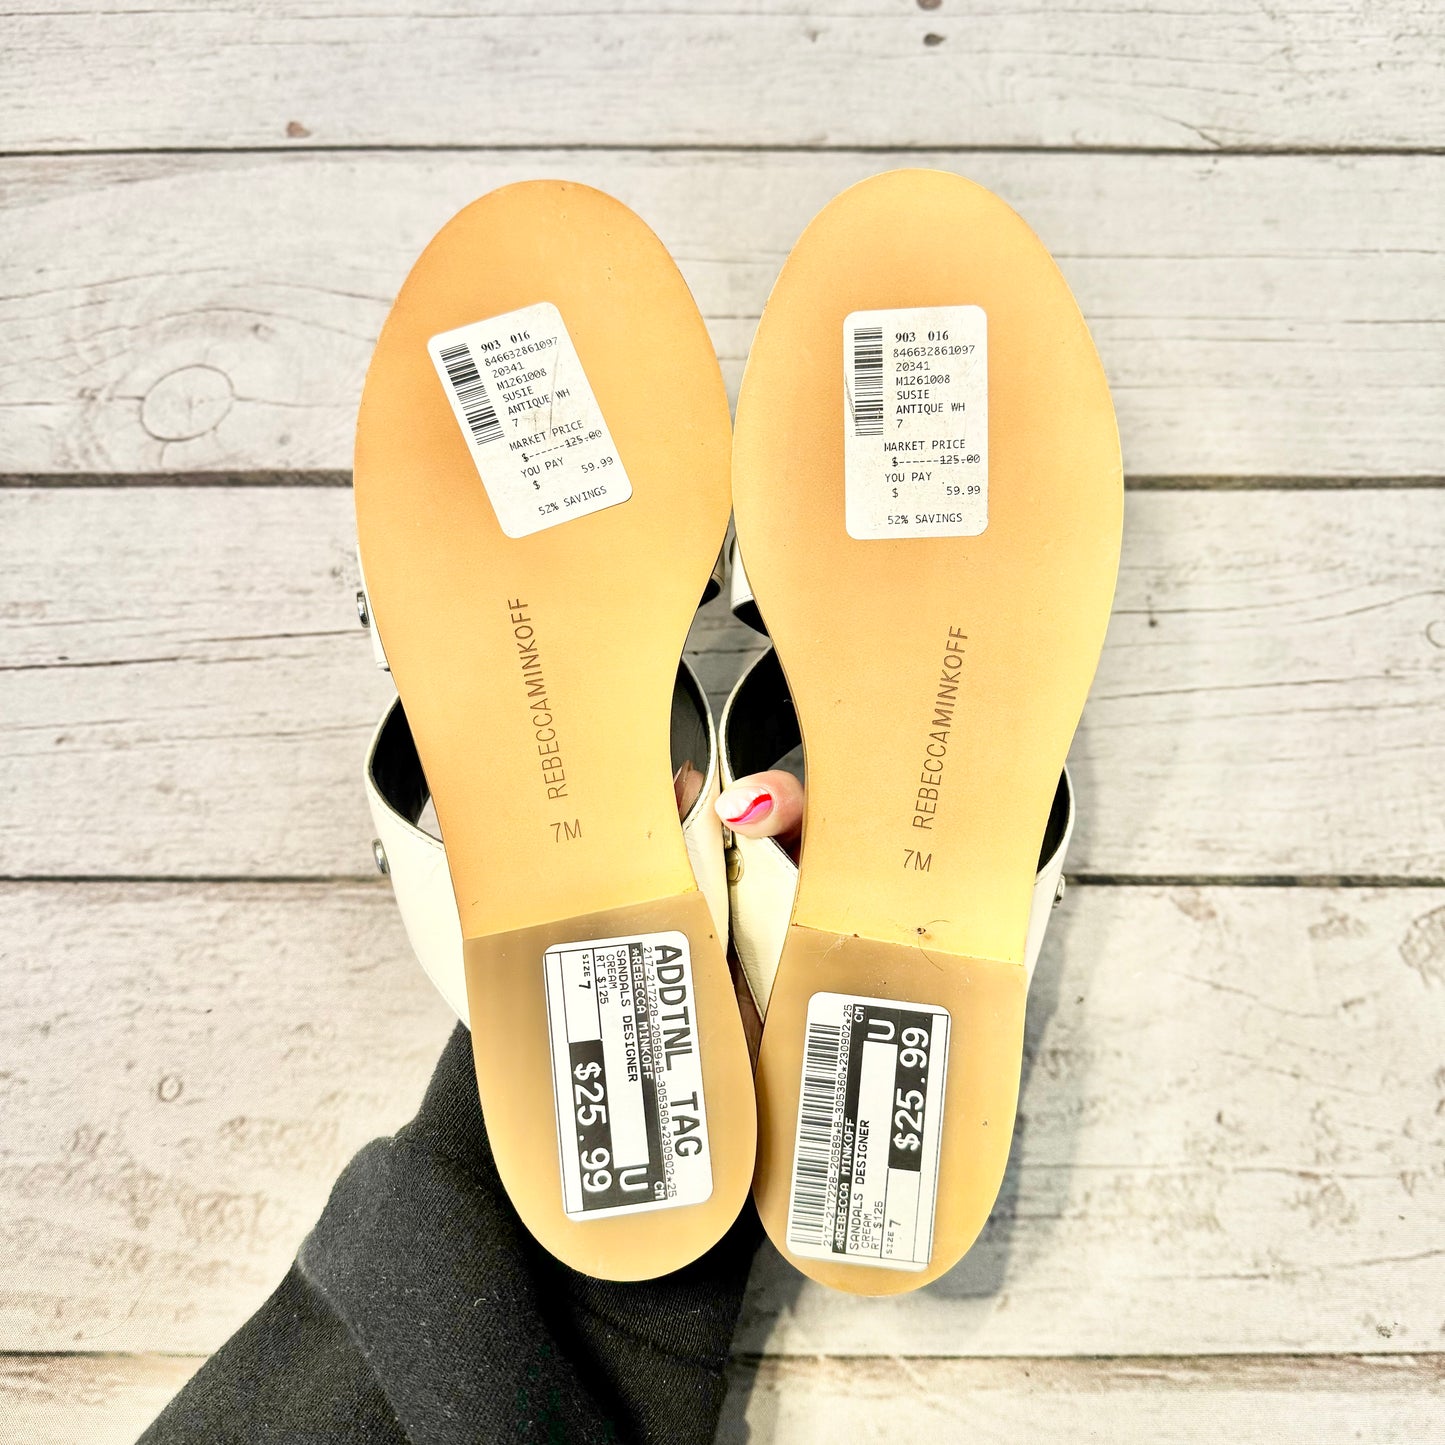 Sandals Designer By Rebecca Minkoff  Size: 7